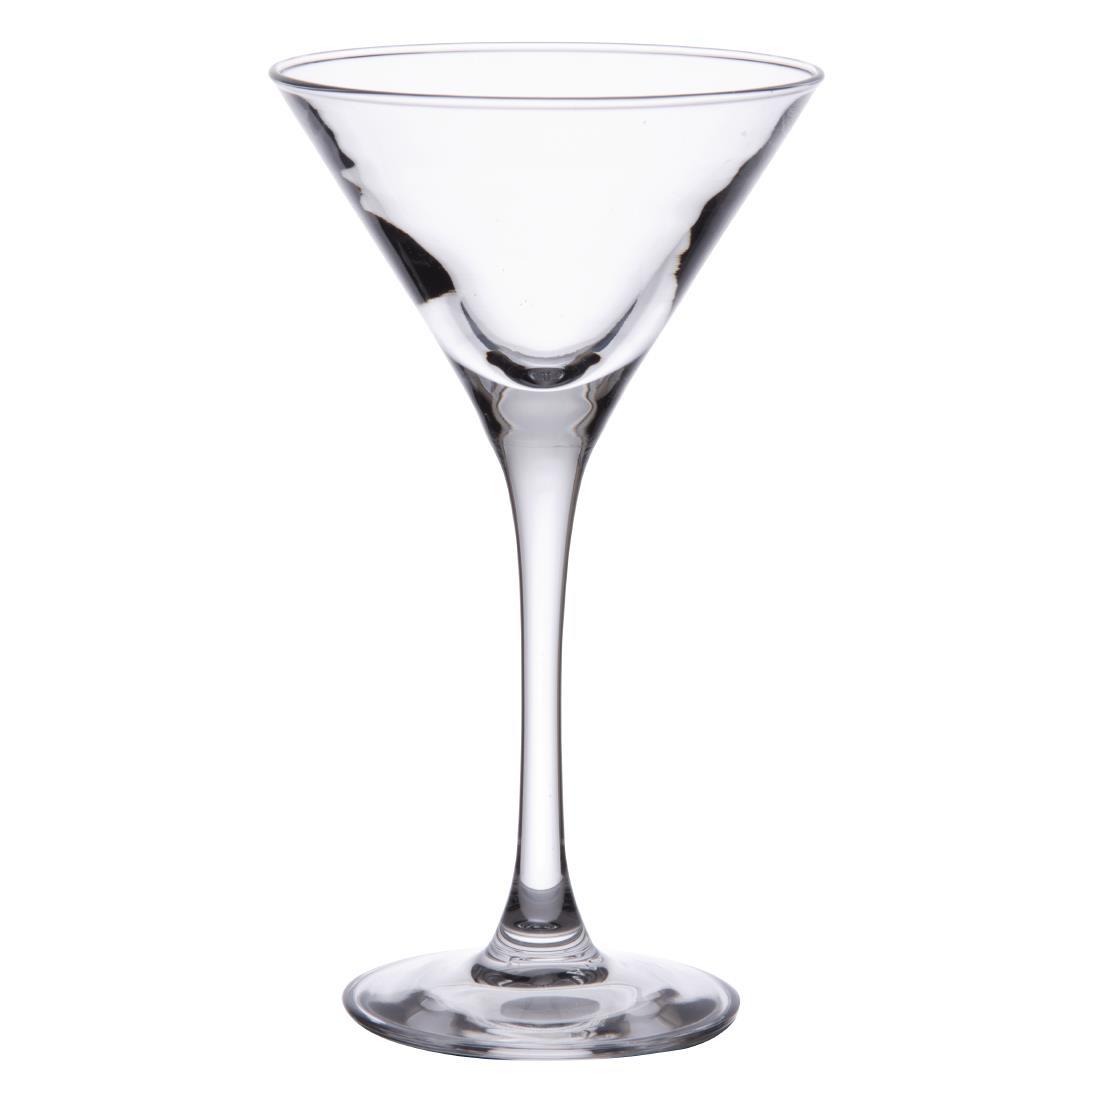 Arcoroc Signature Martini Glasses 140ml (Pack of 24) - DP090  - 1